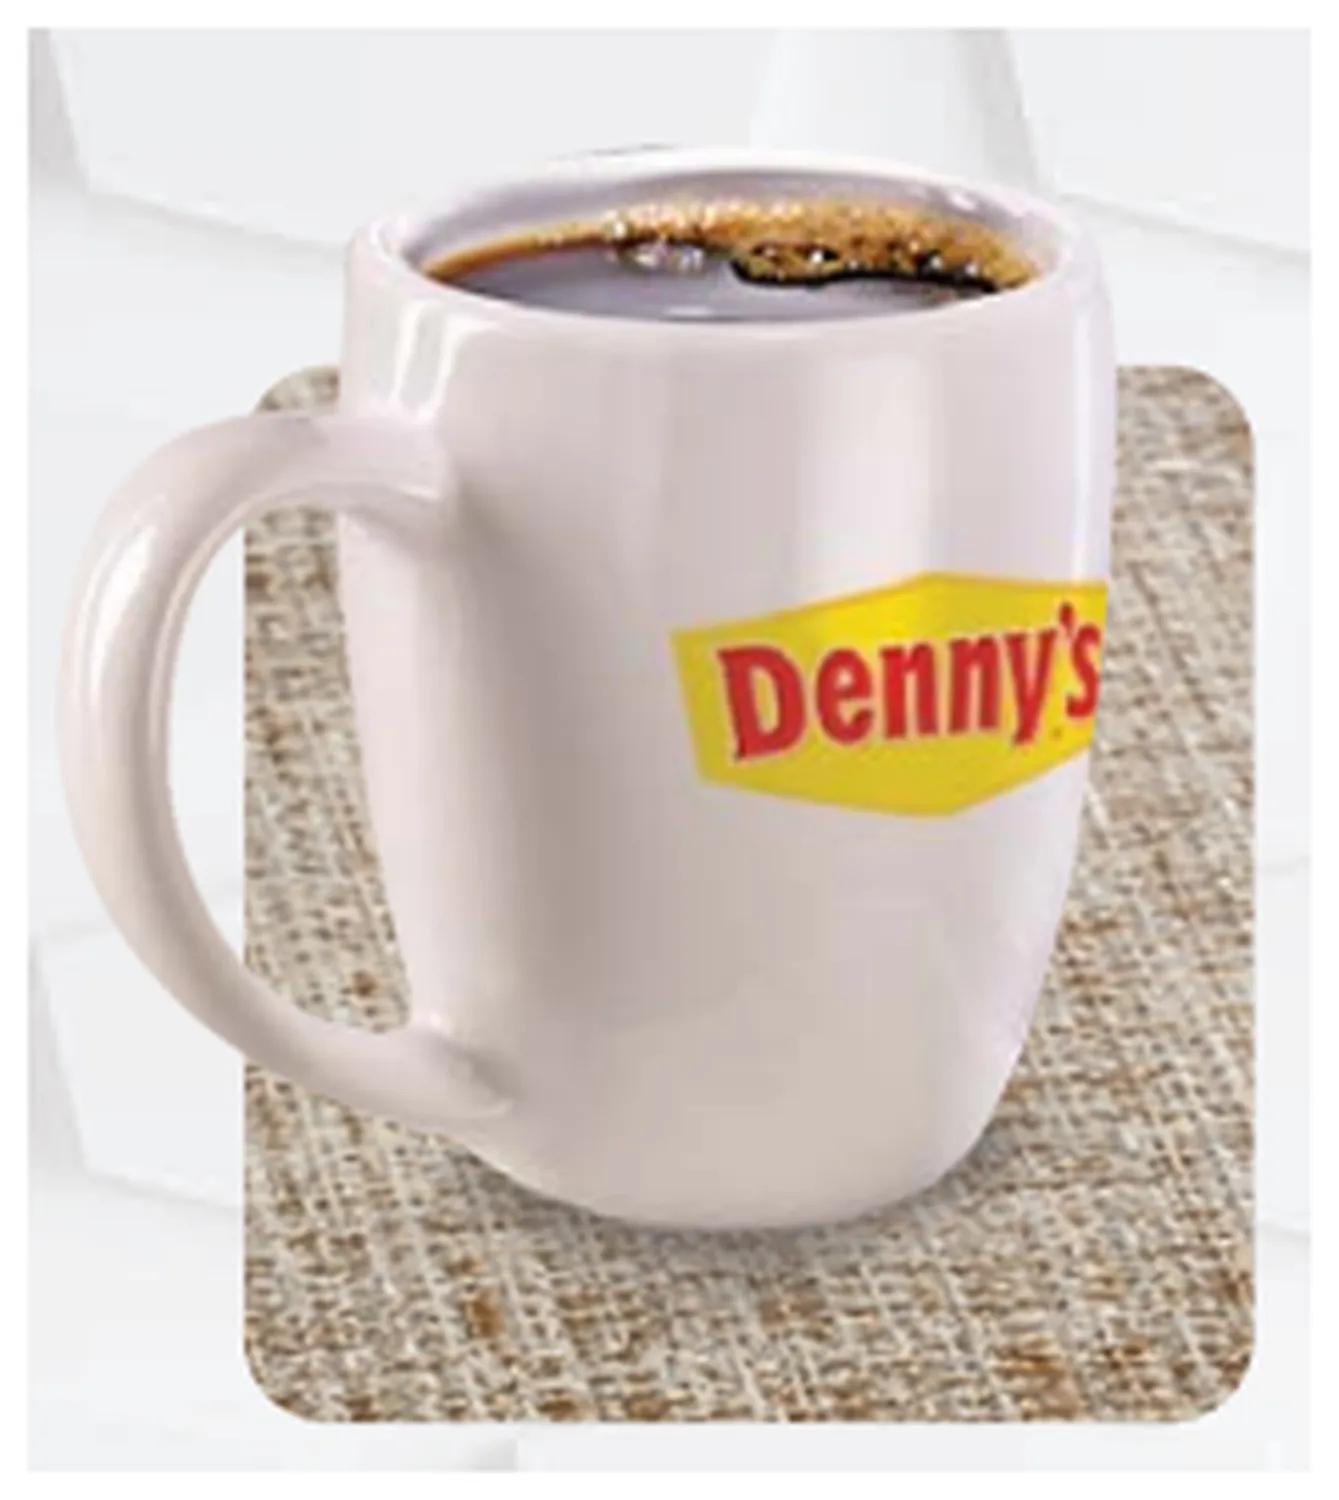 dennys menu philippine hot beverages